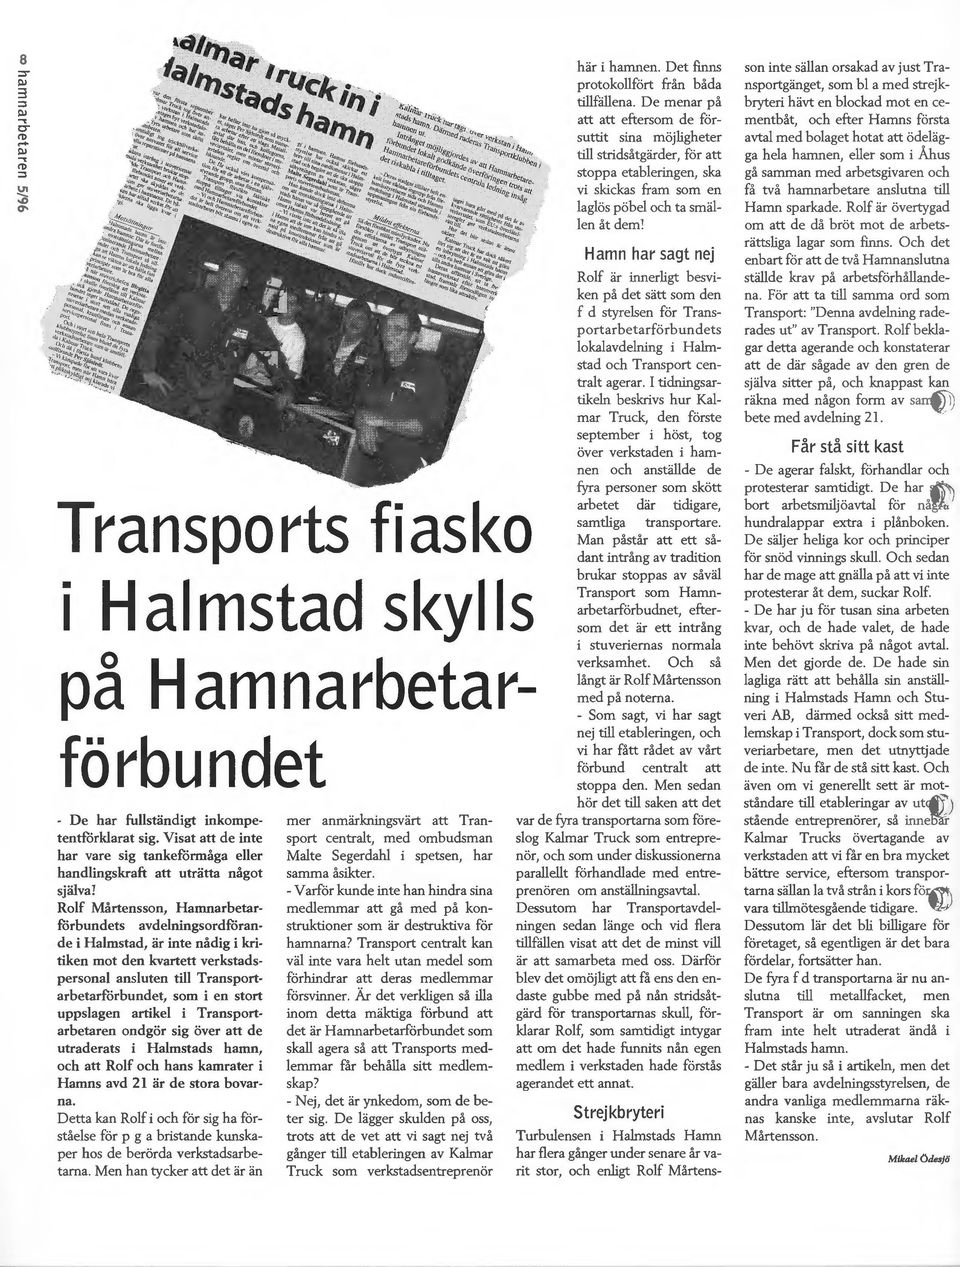 kvartett verkstadspersonal ansluten till Transportarbetarförbundet, som i en stort uppslagen artikel i Transportarbetaren ondgör sig över att de utraderats i Halmstads hamn, och att Rolf och hans